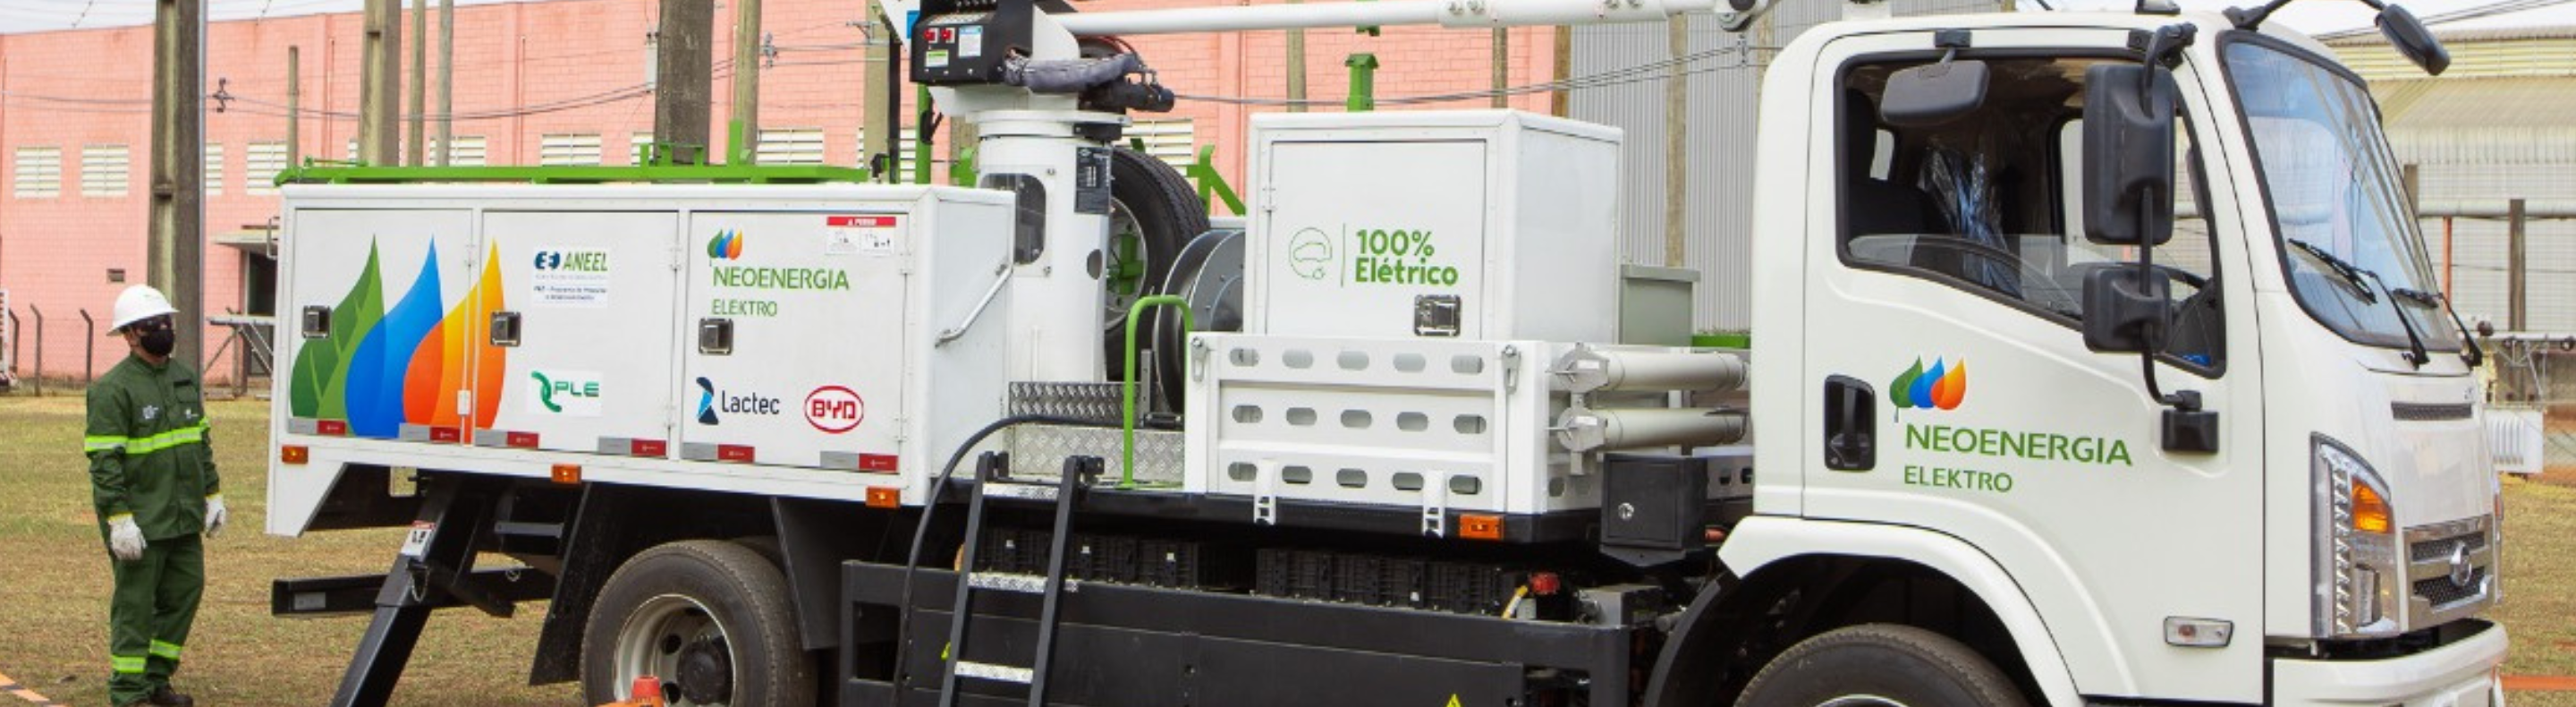 Imagem mostra caminhão elétrico da Neoenergia usado nas operações de campo